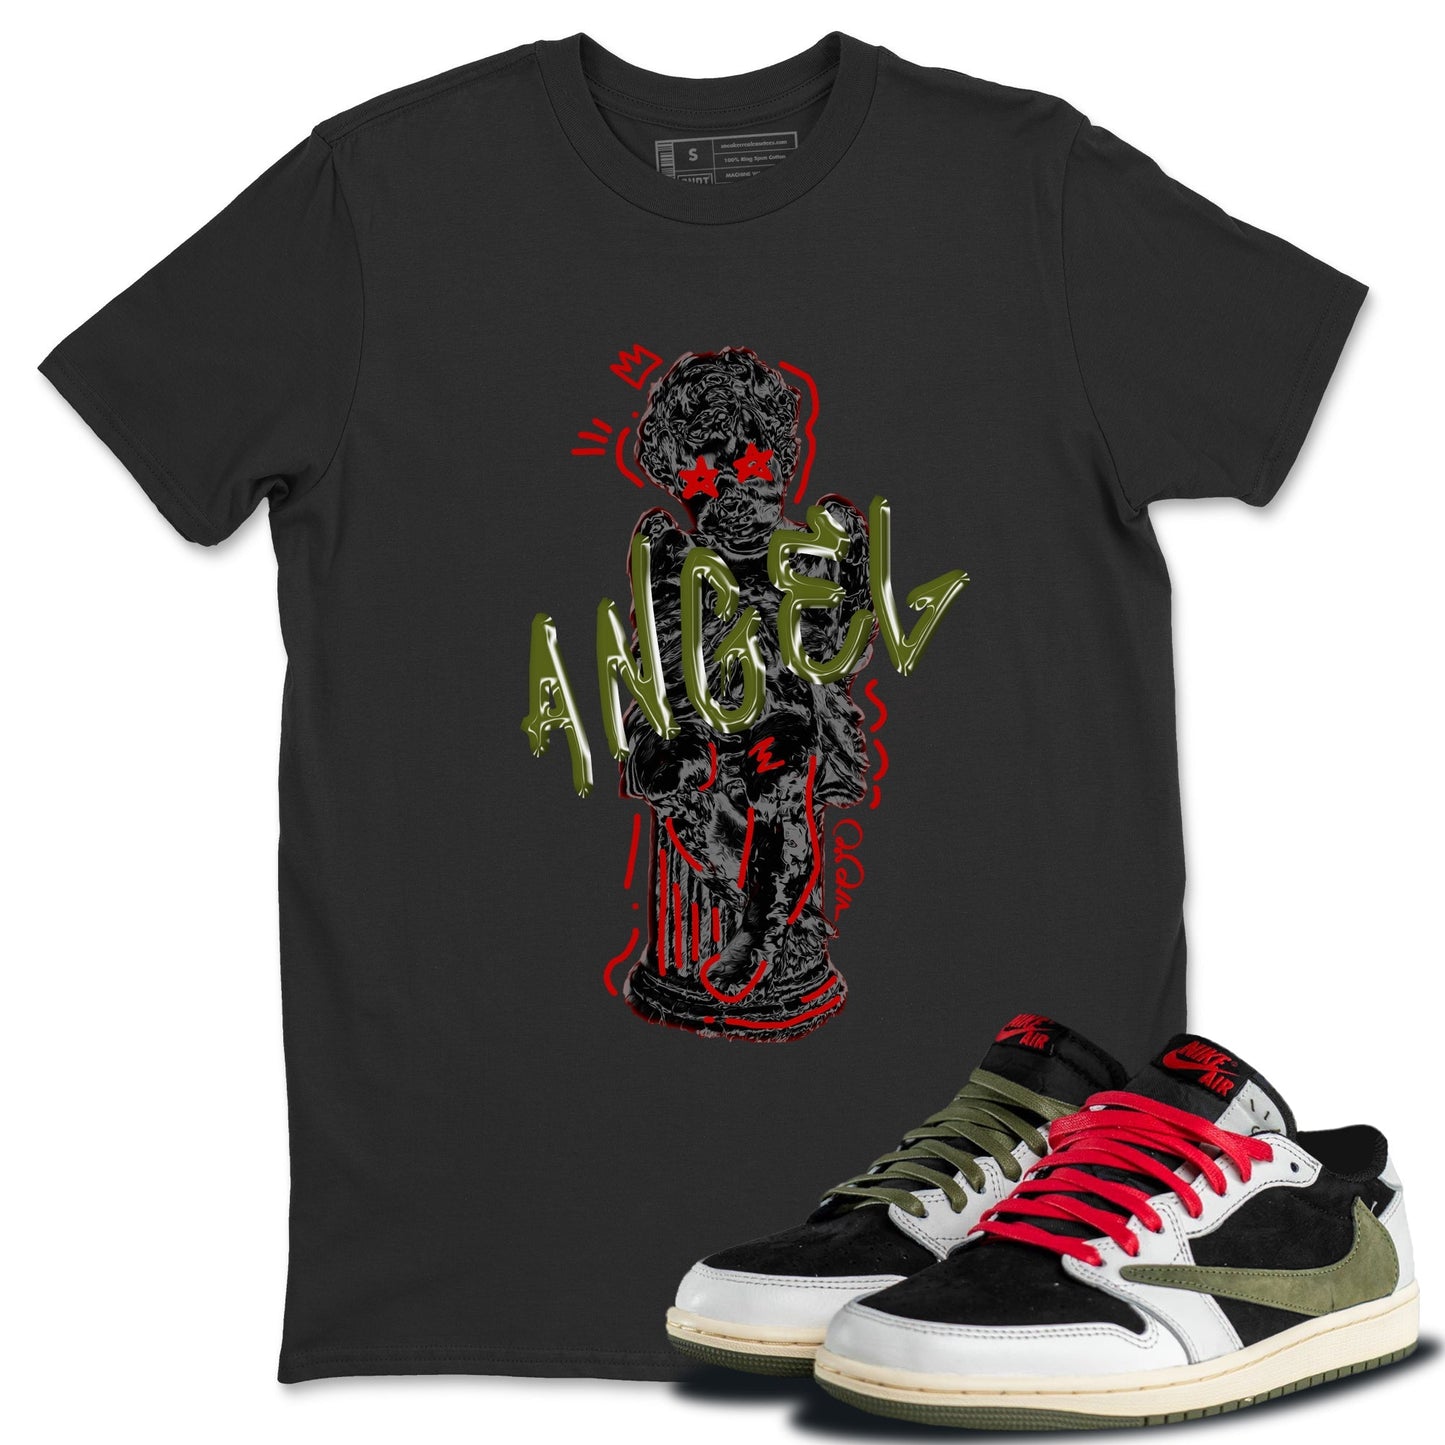 Air Jordan 1 Travis Scott Olive Sneaker Match Tees Baby Angel Streetwear Sneaker Shirt AJ1 OG Travis Scott Olive Sneaker Release Tees Unisex Shirts Black 1